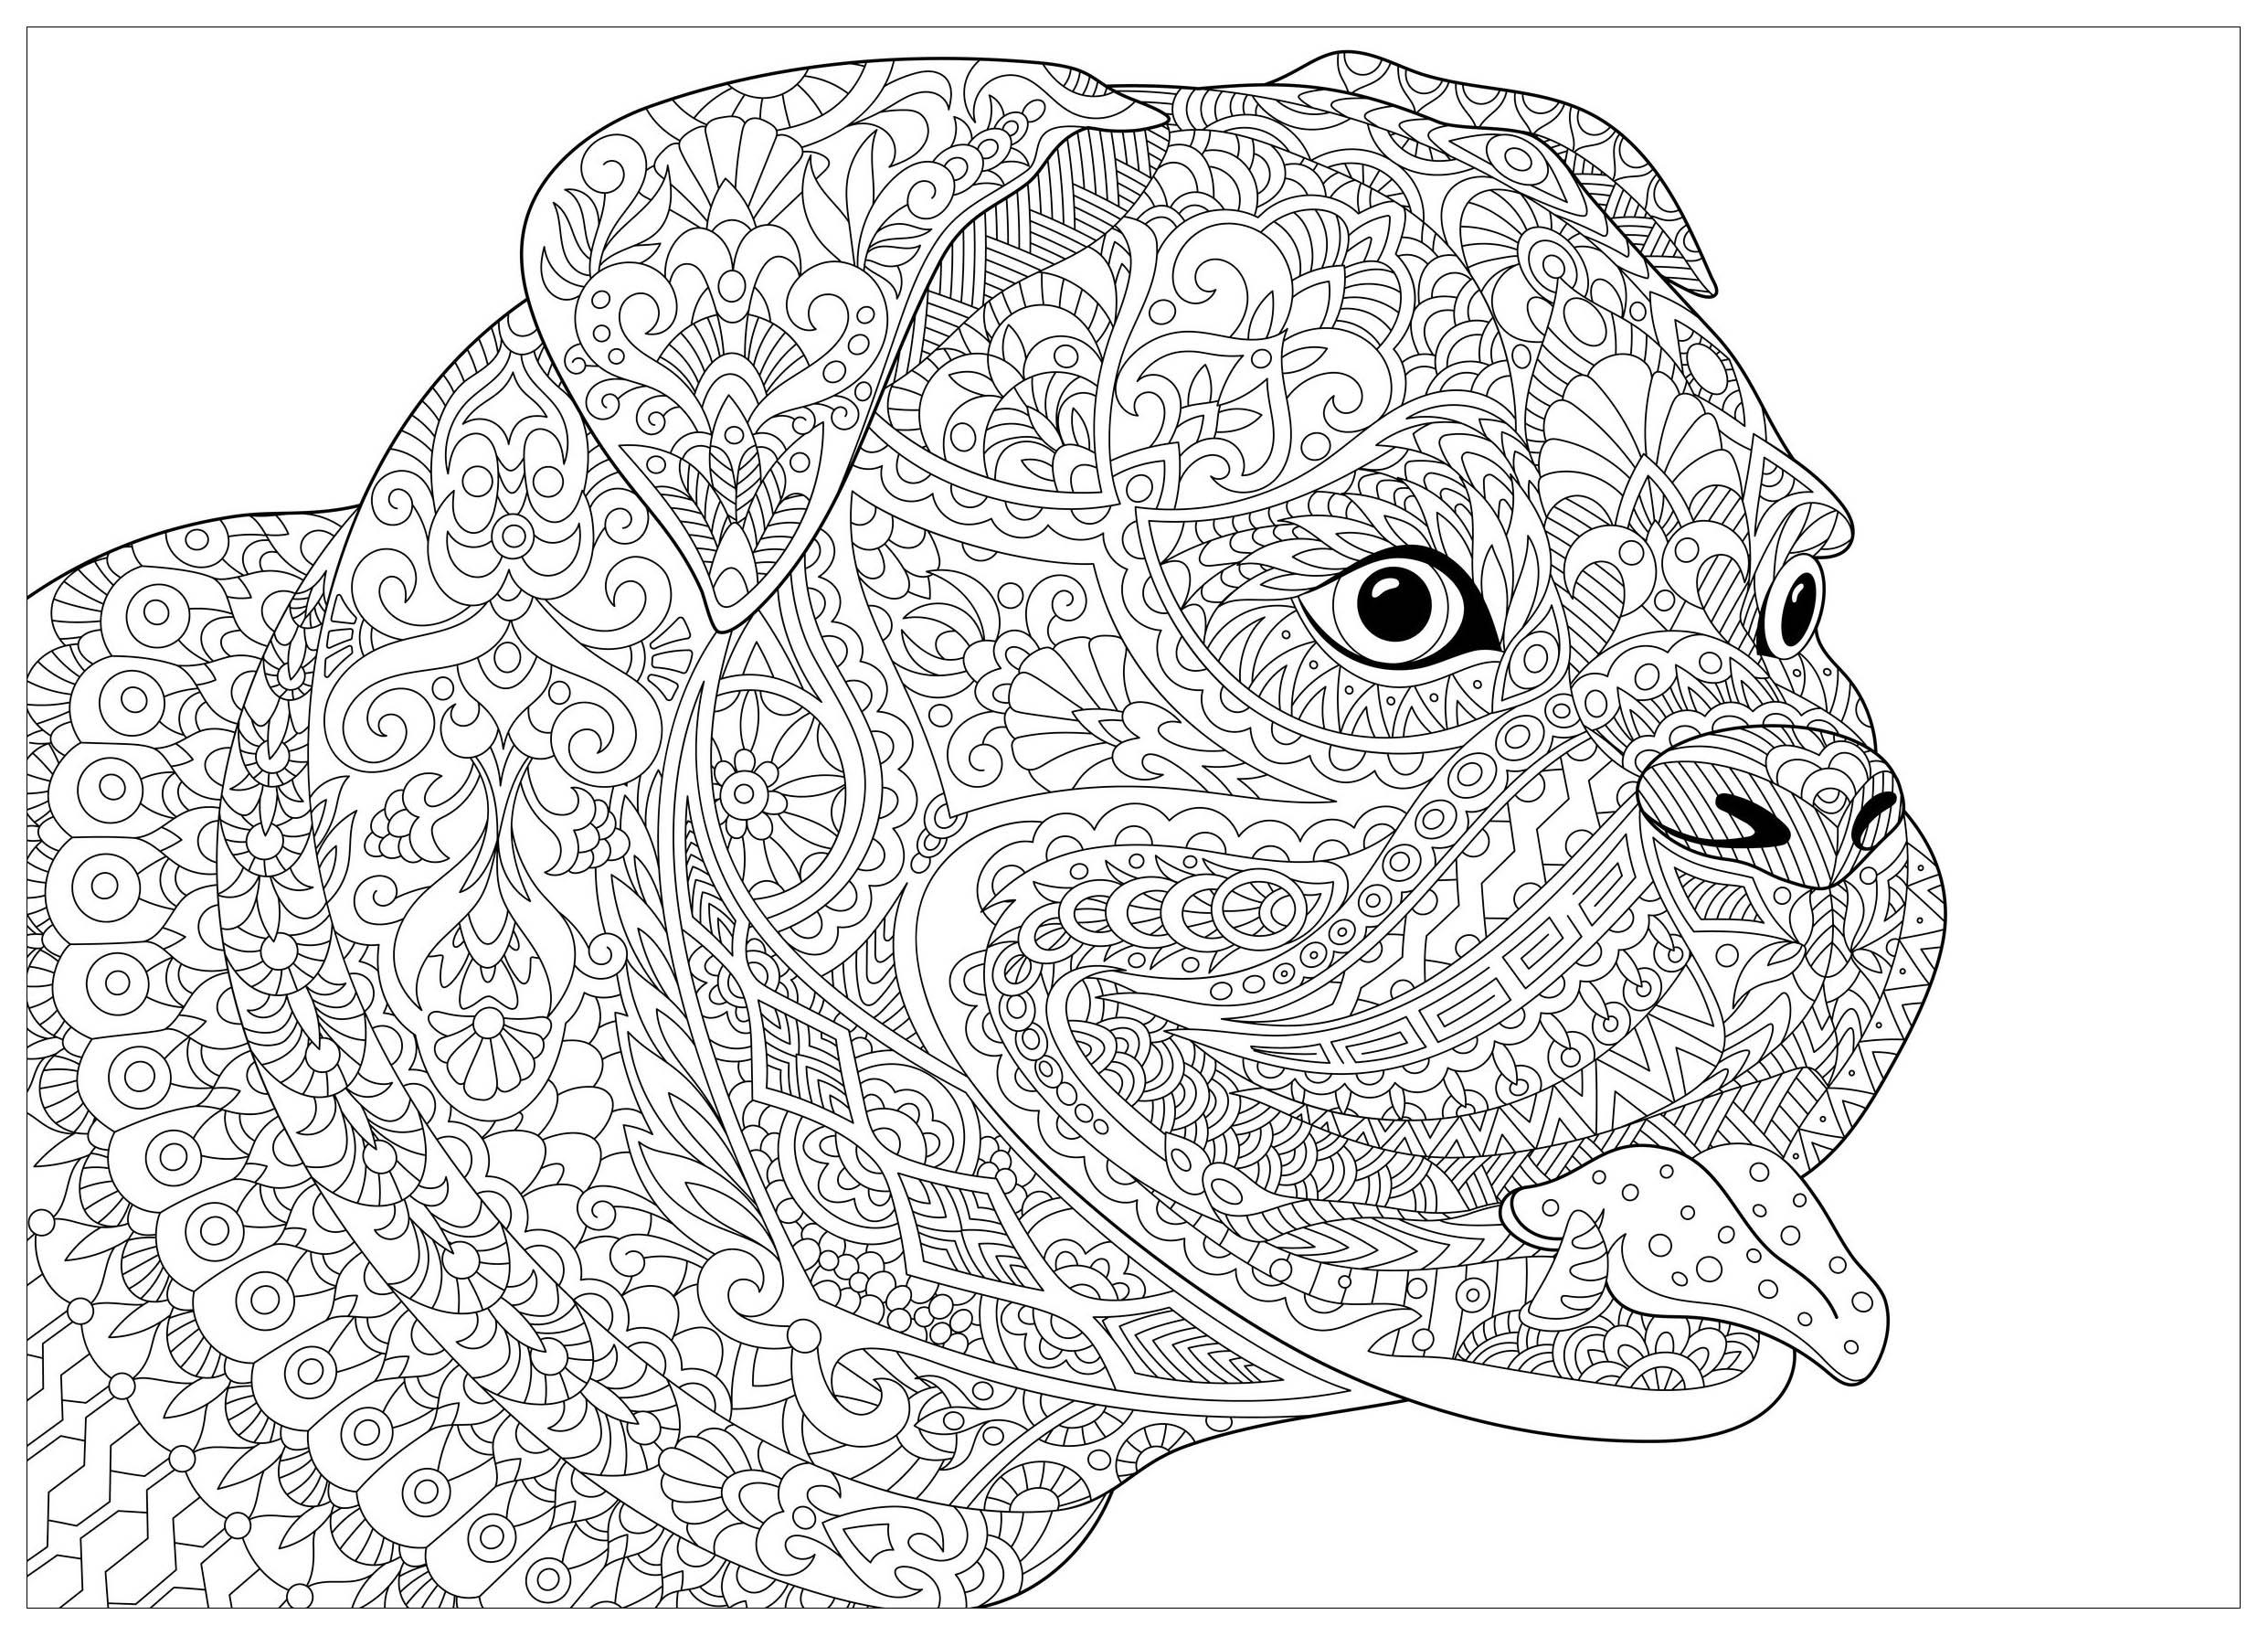 Desenhos grátis para colorir de Cães para imprimir e colorir, Artista : Sybirko   Fonte : 123rf